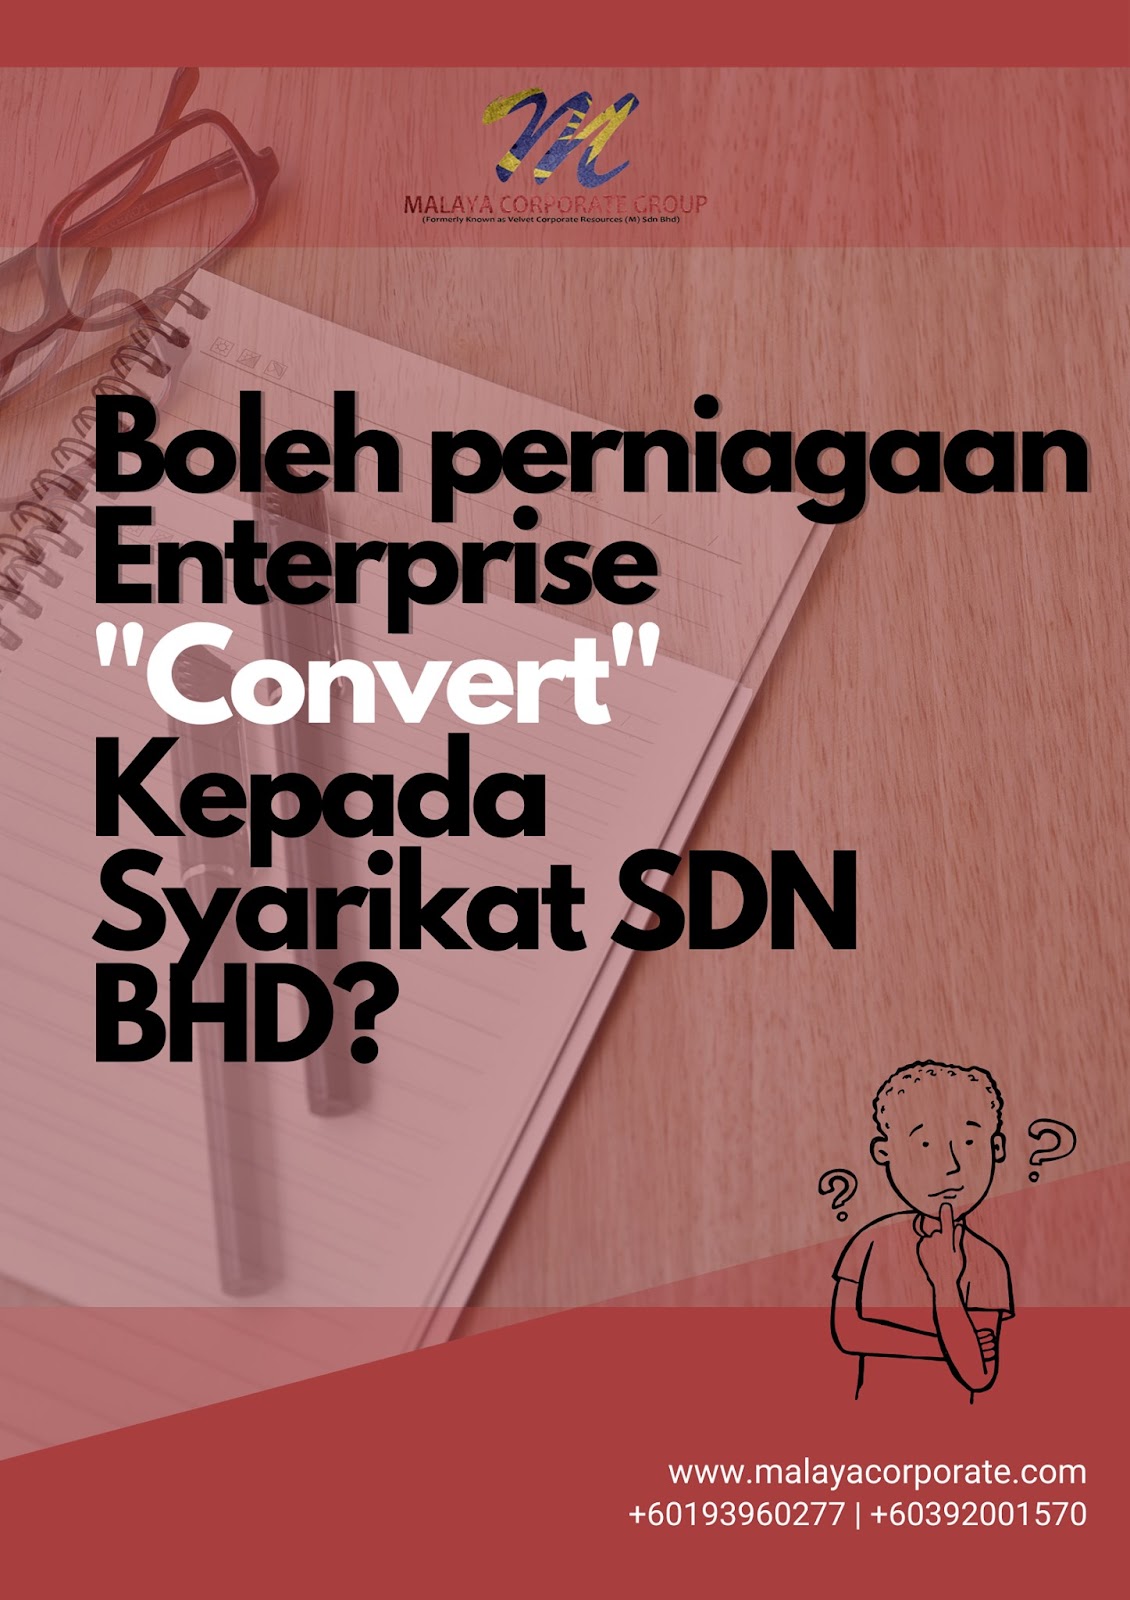 azizamazizan.blogspot.com Convert Enterprise Kepada Sdn Bhd? Boleh ke?